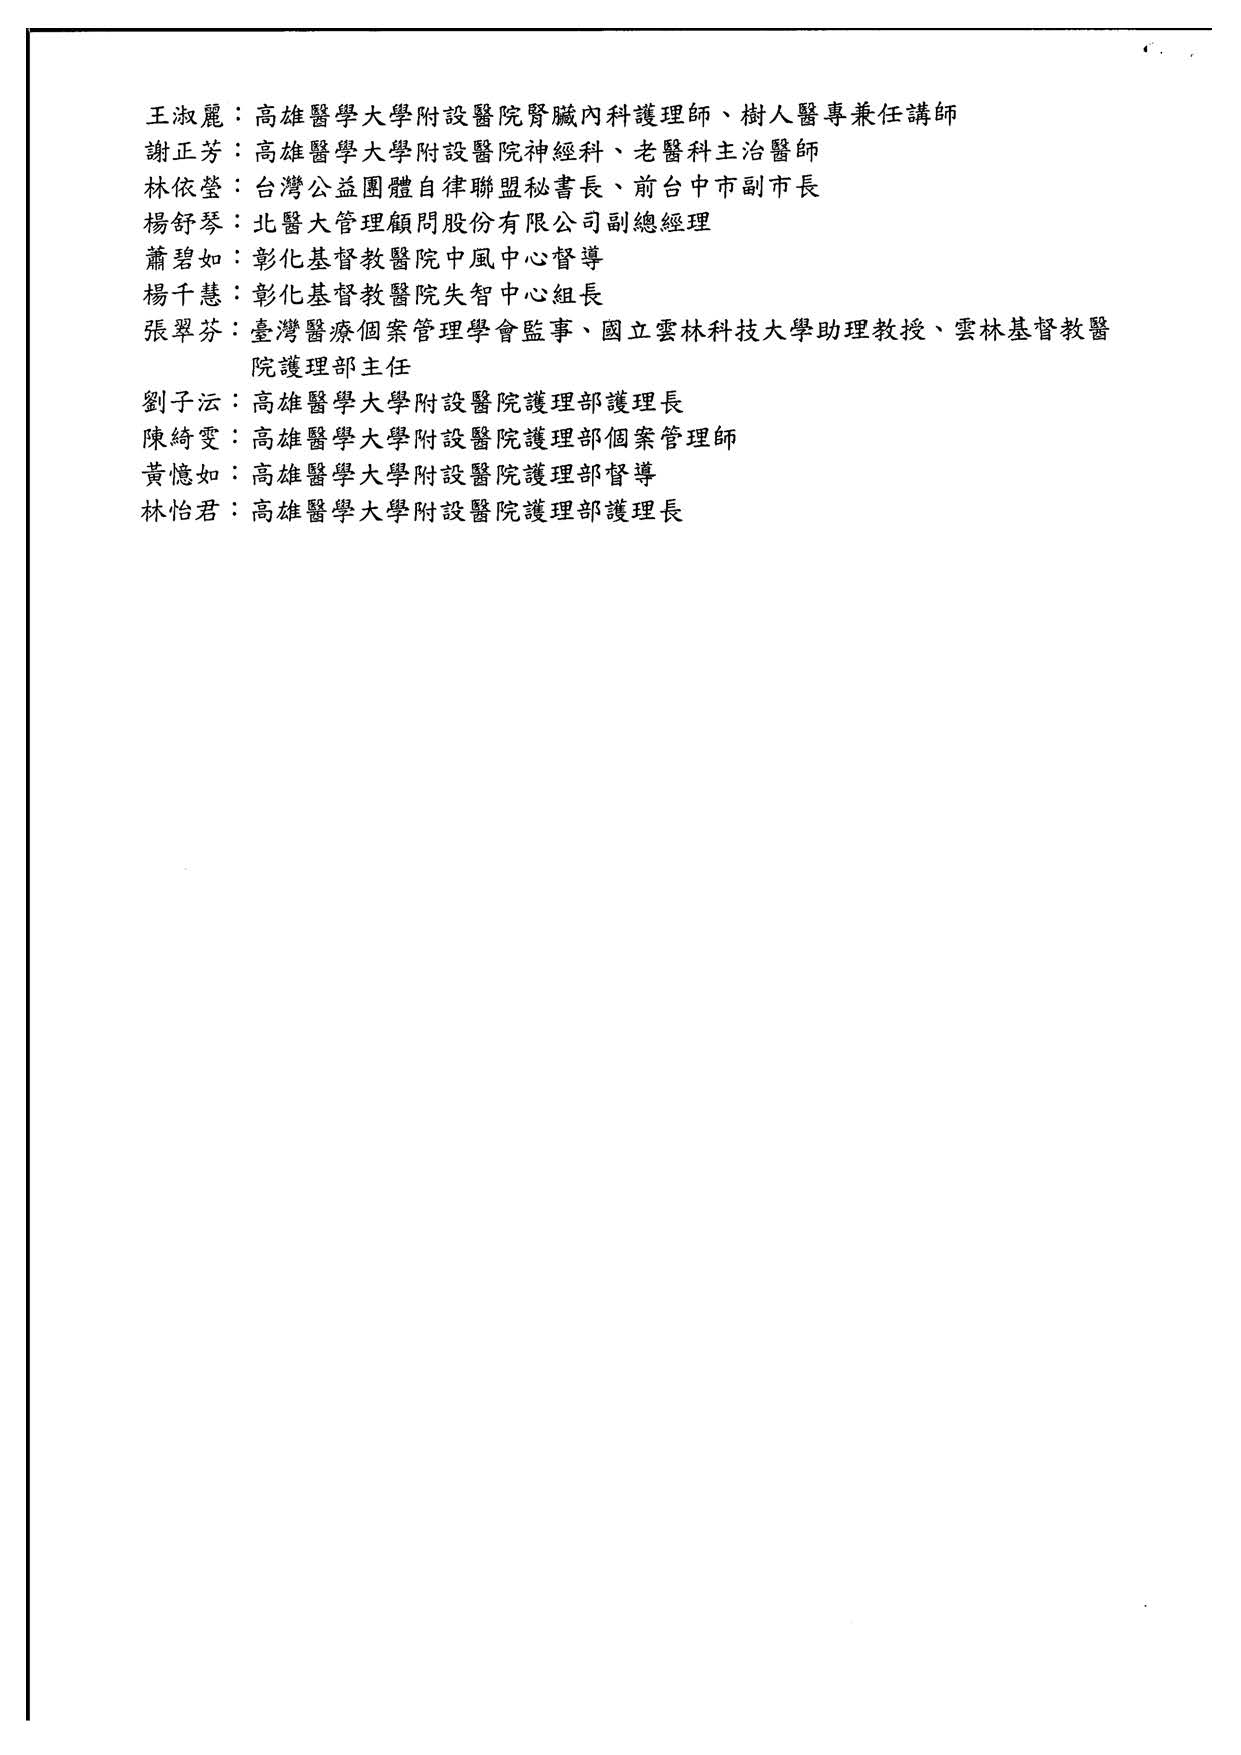 110319臺灣醫療個案管理學會課程宣傳公文 頁面 5